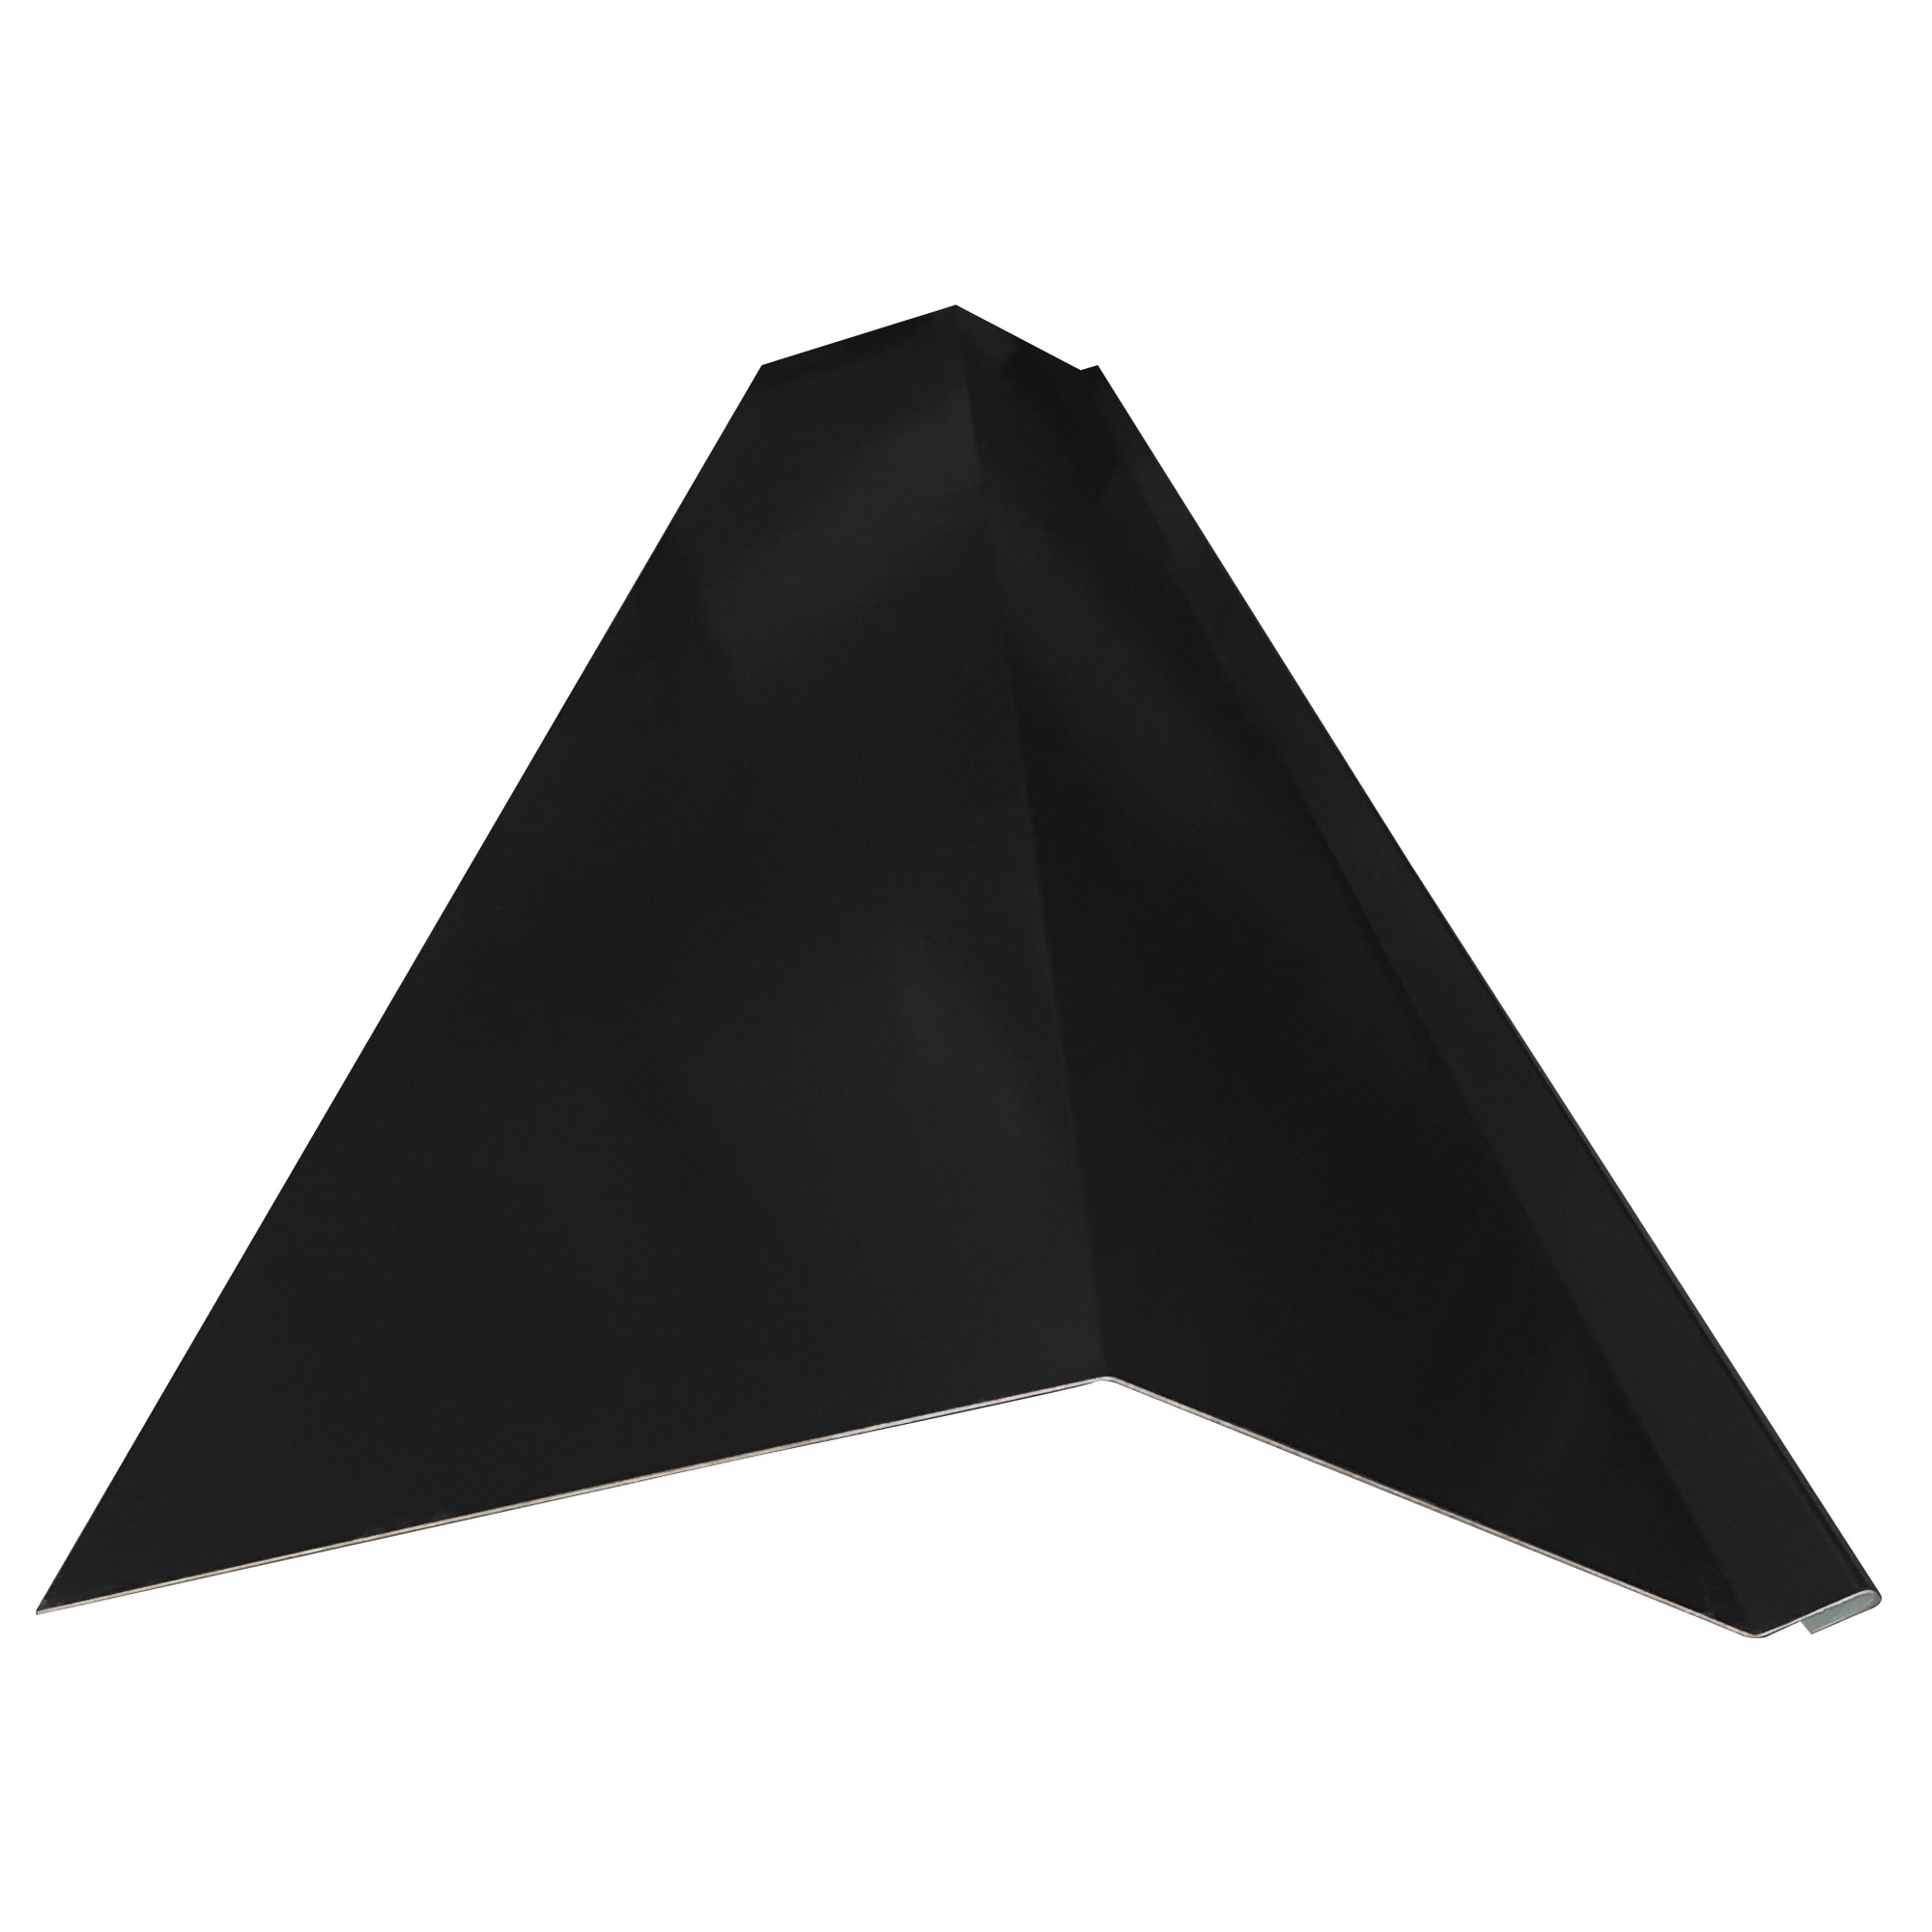 Schürze für Mansarden außen schwarz verzinkt 200 x 20,8 x 0,04 cm + product picture